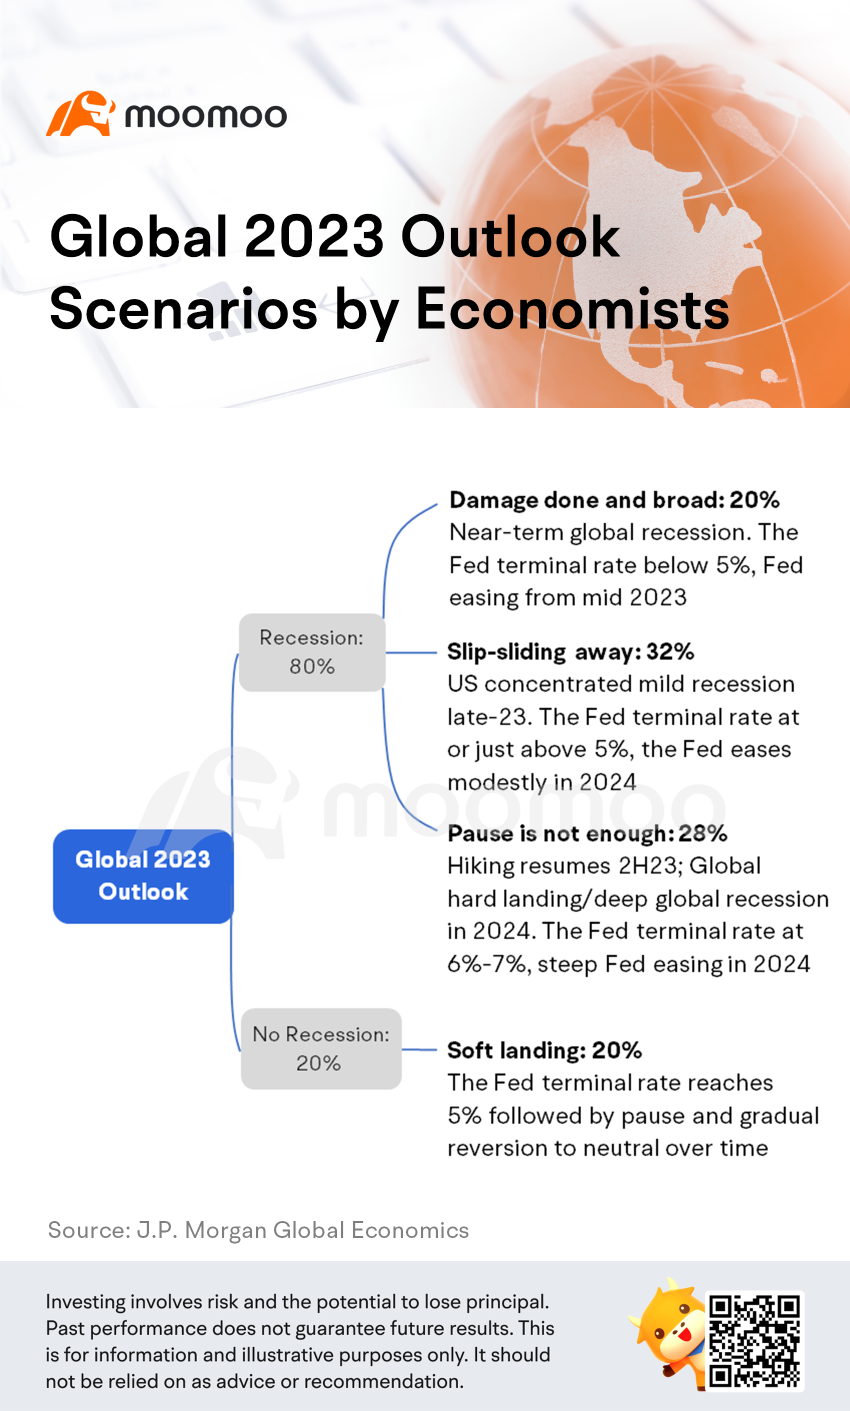 經濟學家分析的全球 2023 年展望場景